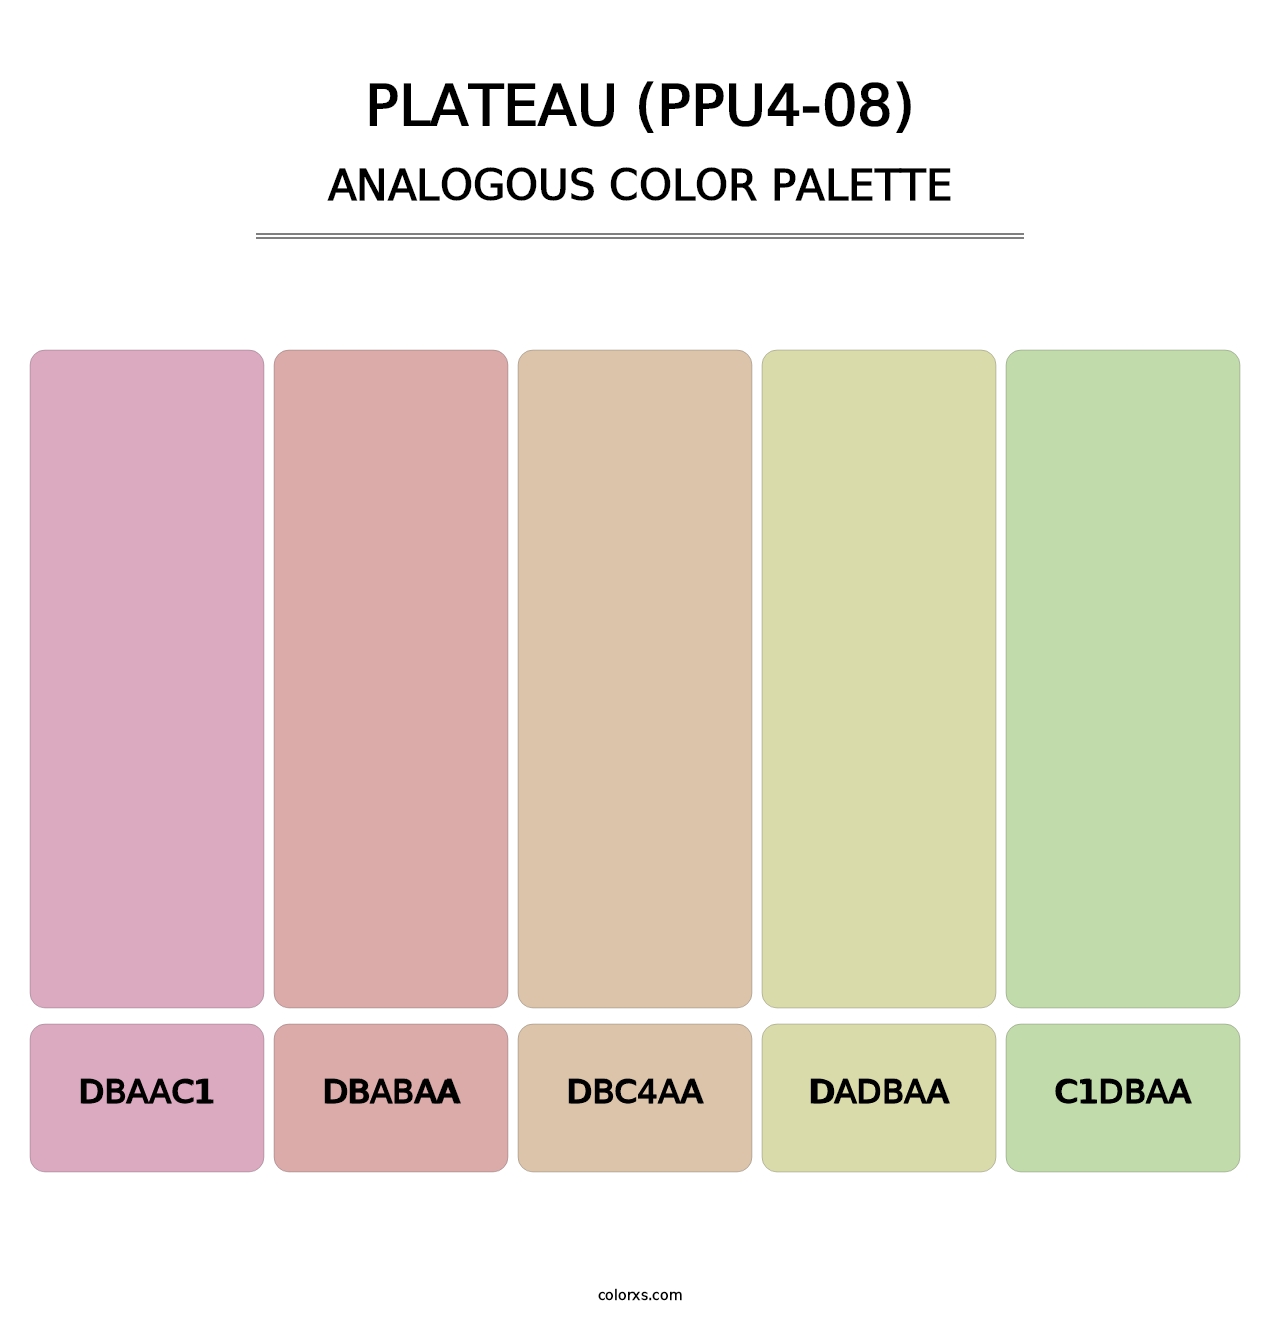 Plateau (PPU4-08) - Analogous Color Palette